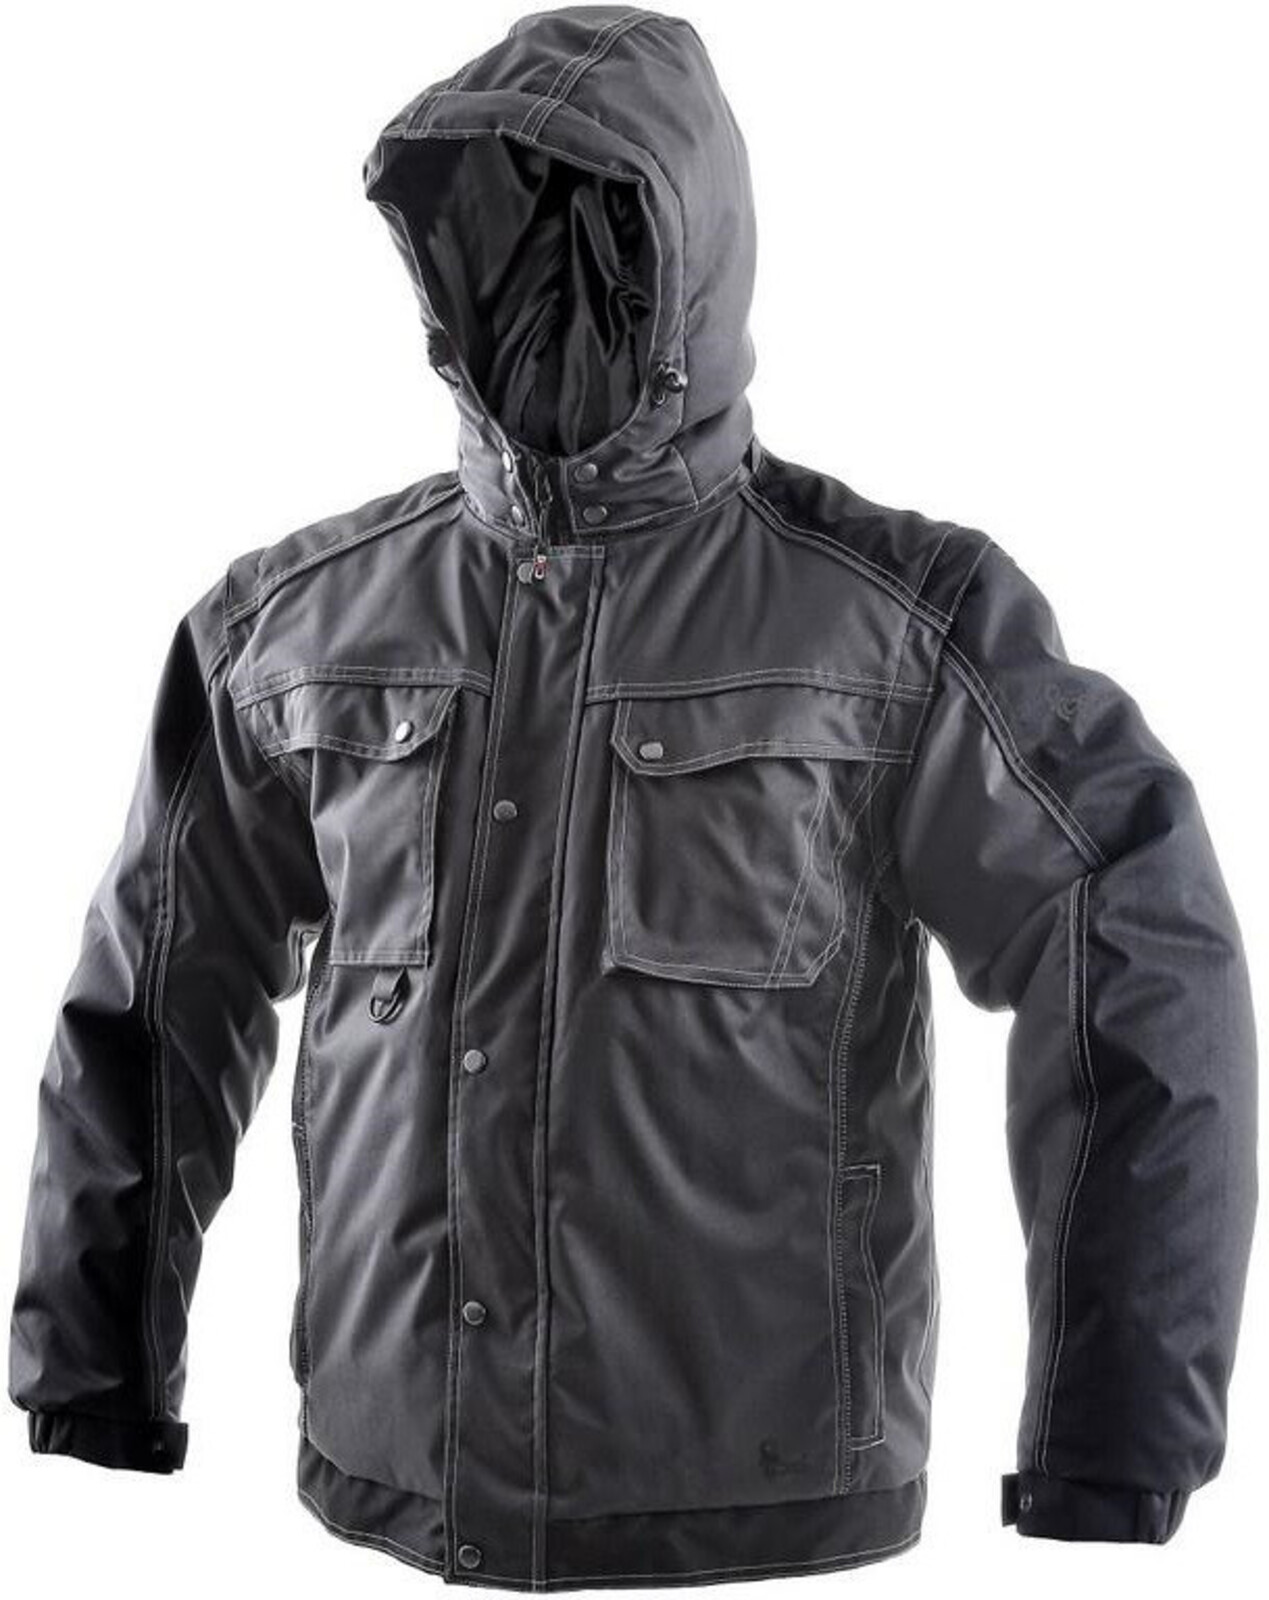 Pánska zimná bunda CXS Irvine 2v1 - veľkosť: L, farba: sivá/čierna